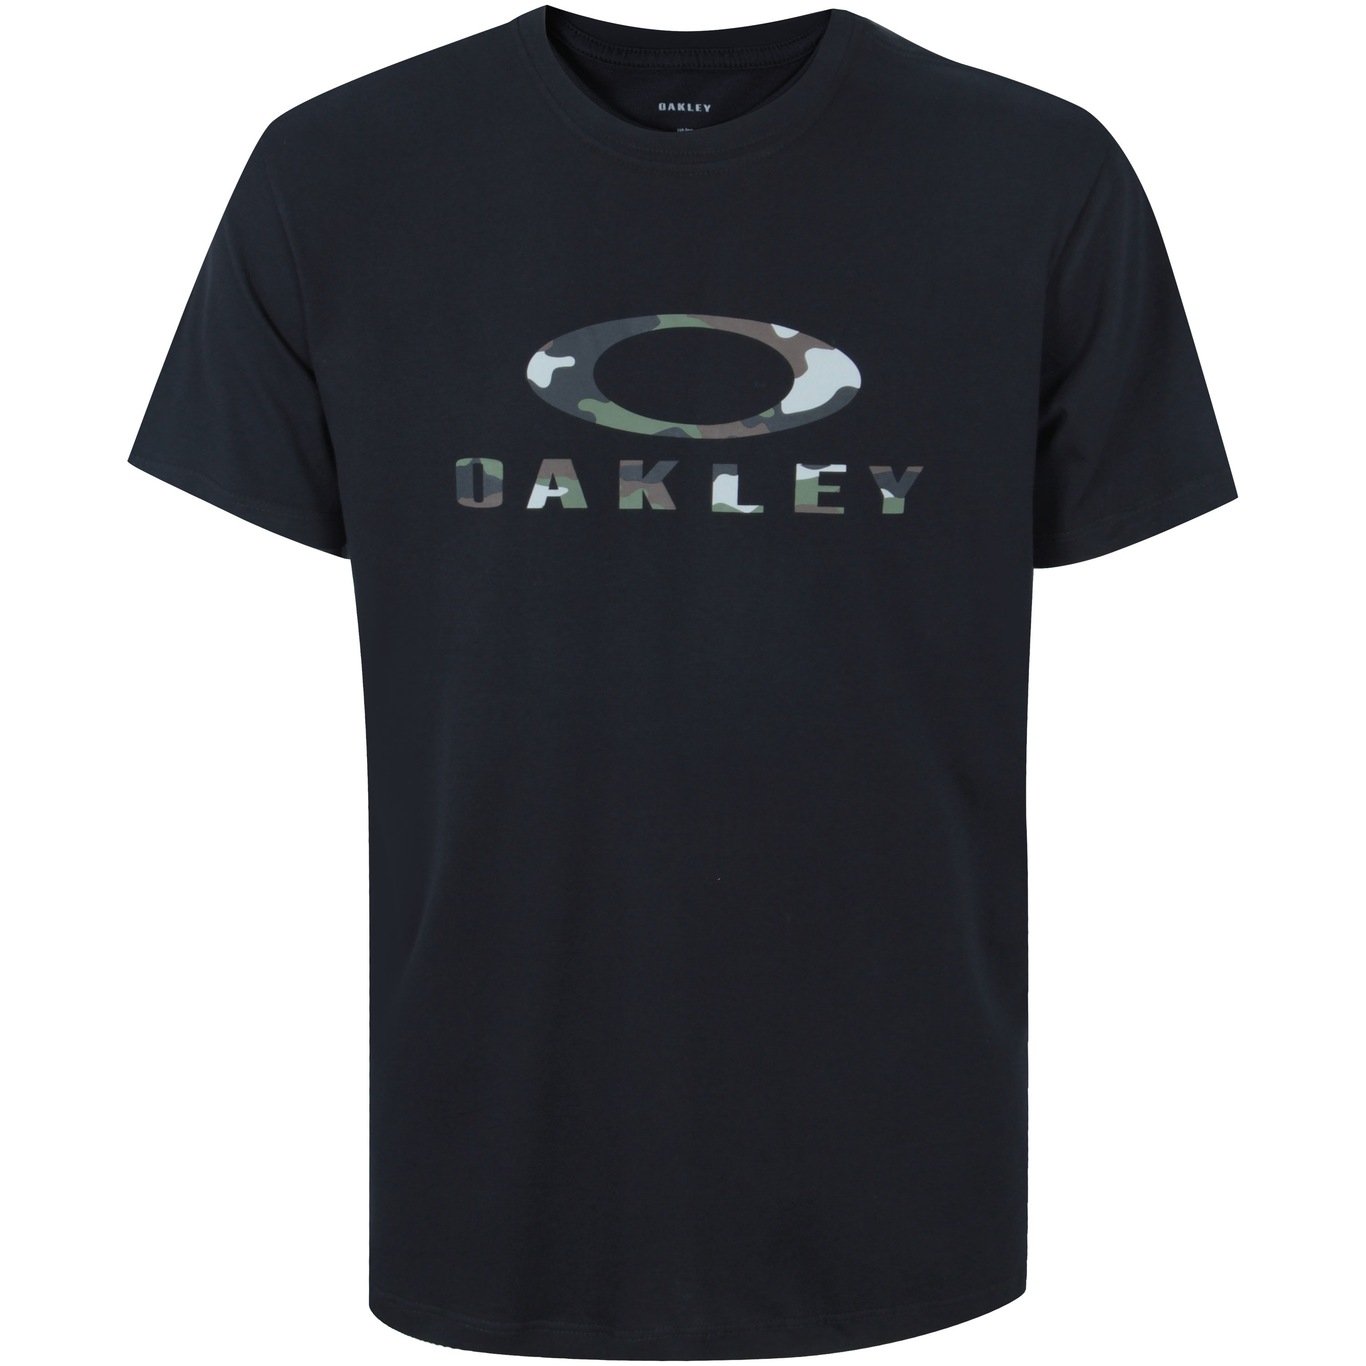 Camiseta oakley masculina iconic tee vermelho em Promoção na